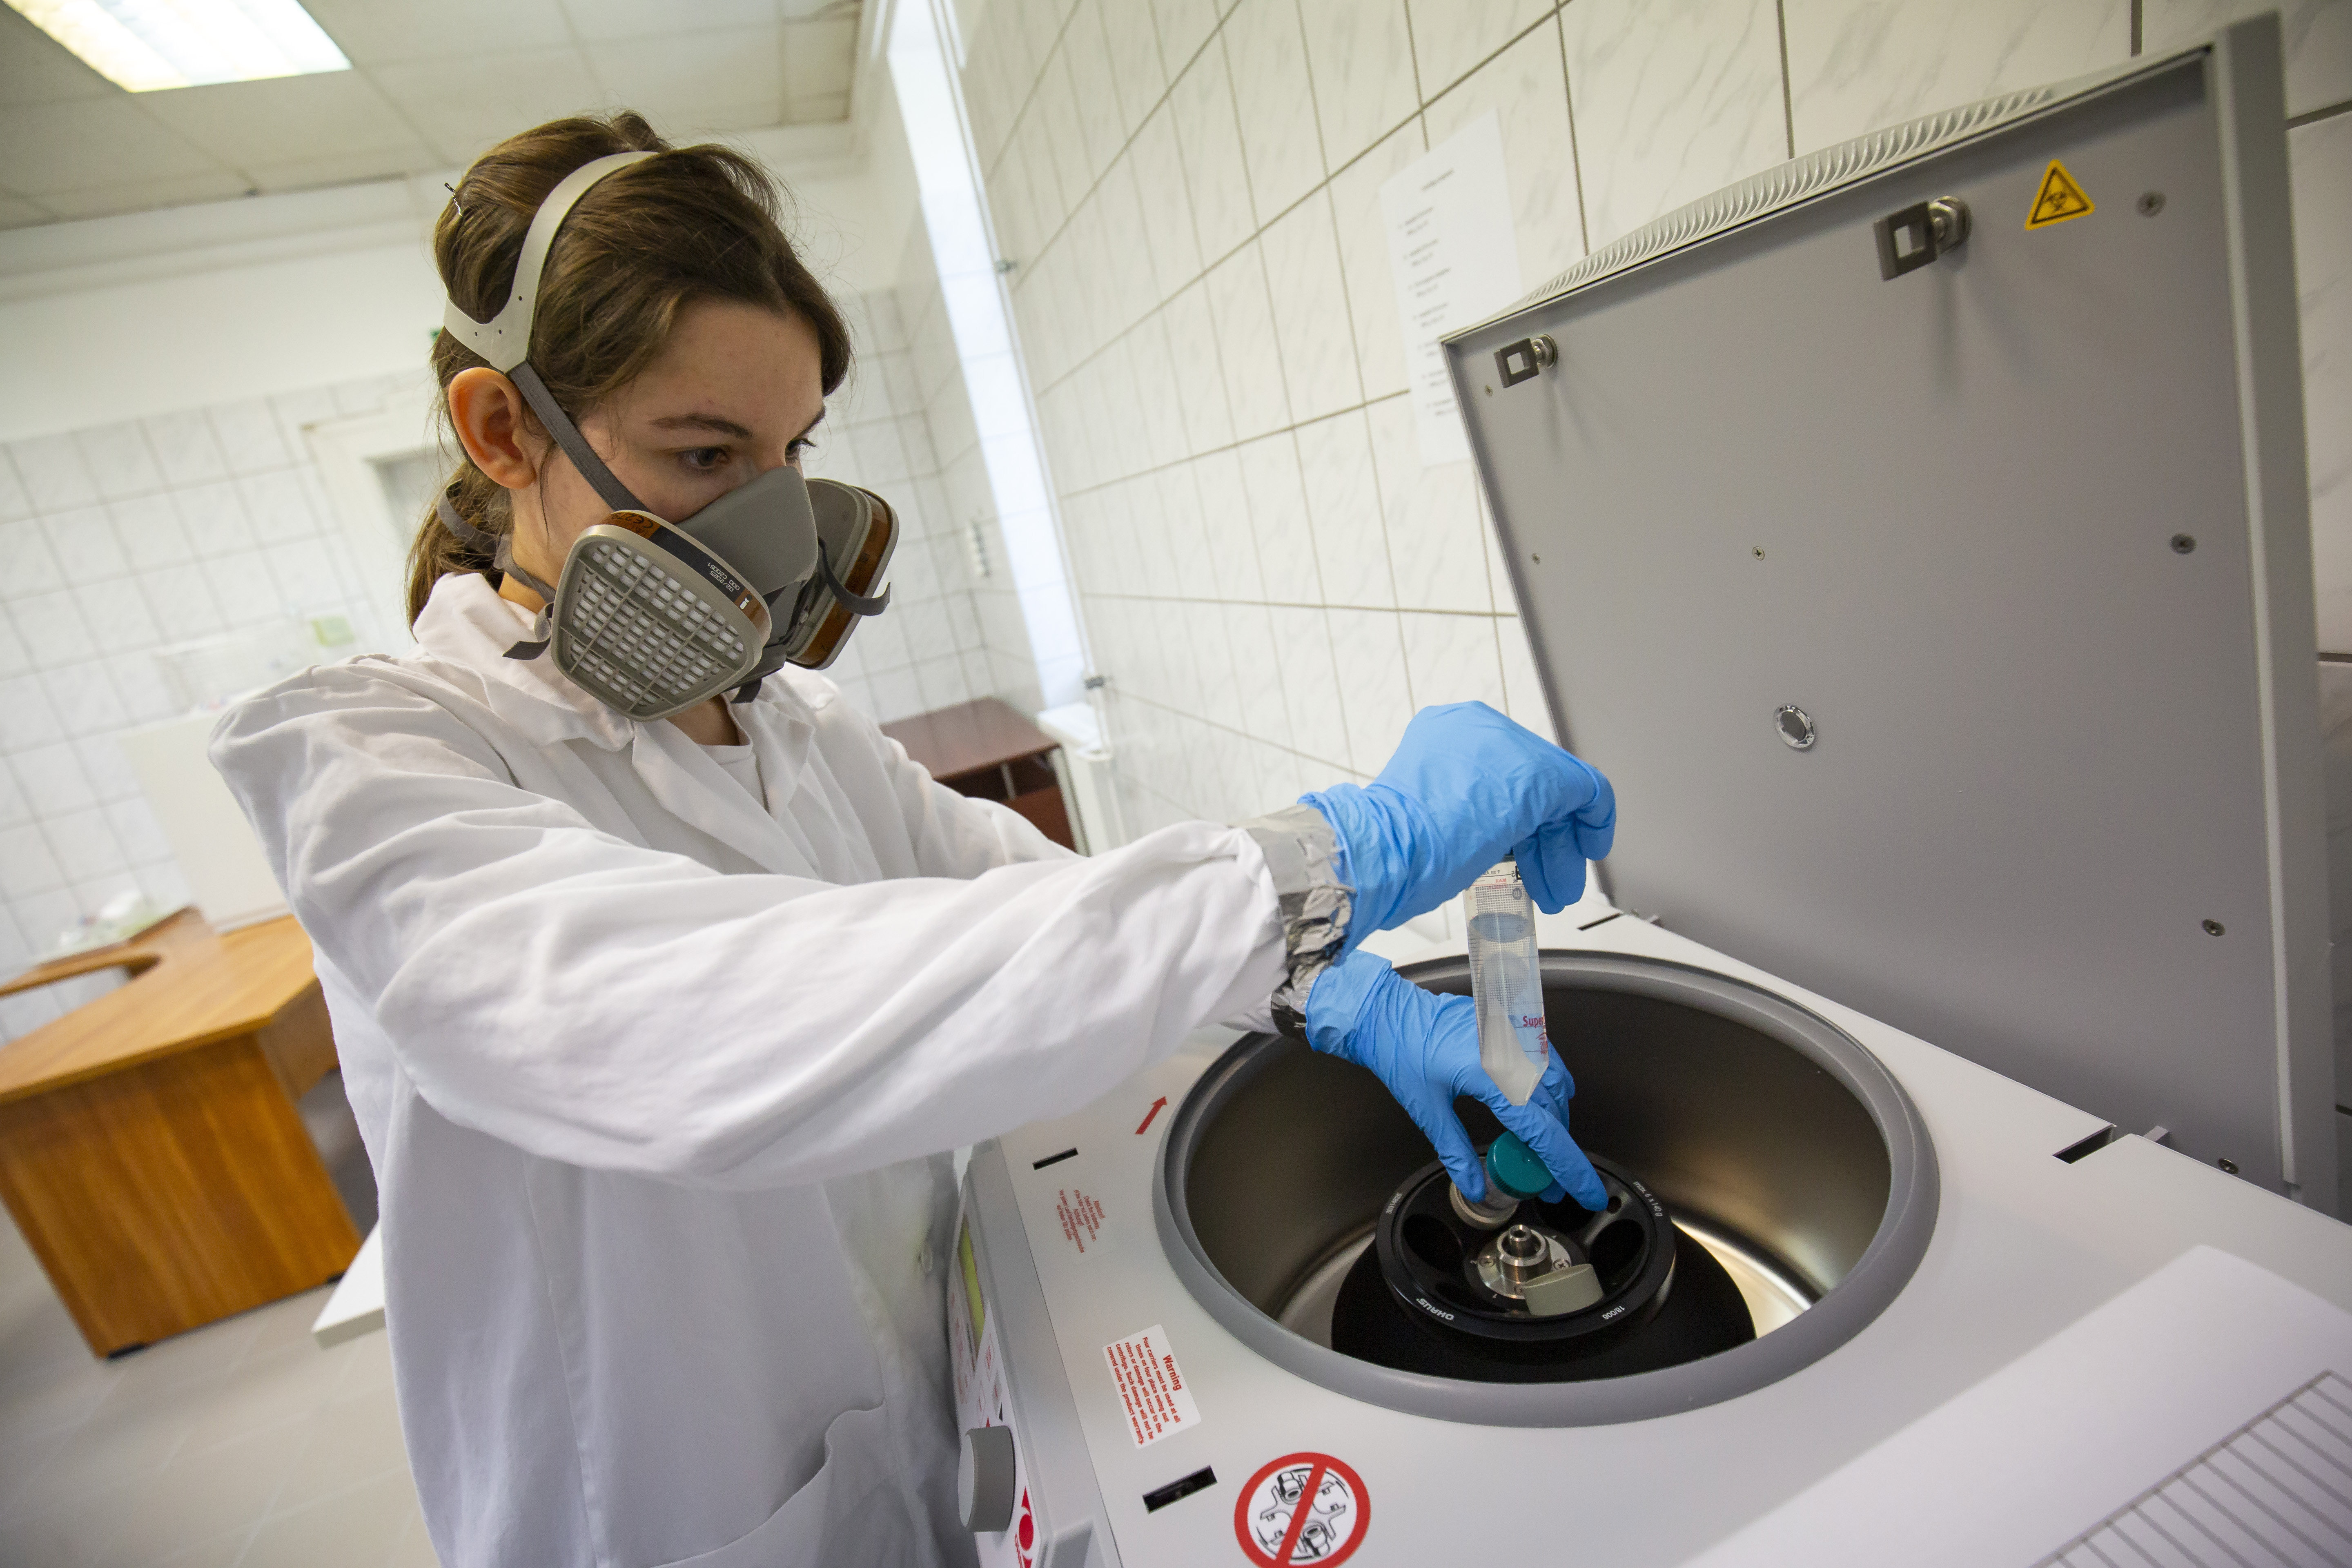 Adamcsik Orsolya, a Pannon Egyetemhez tartozó Soós Ernő Víztechnológiai Kutató-Fejlesztő Központ kutatója centrifugába helyez mintát, amikor szennyvízből készít a koronavírus kimutatására alkalmas koncentrátumot a MOL nagykanizsai laborjában 2020. április 20-án.